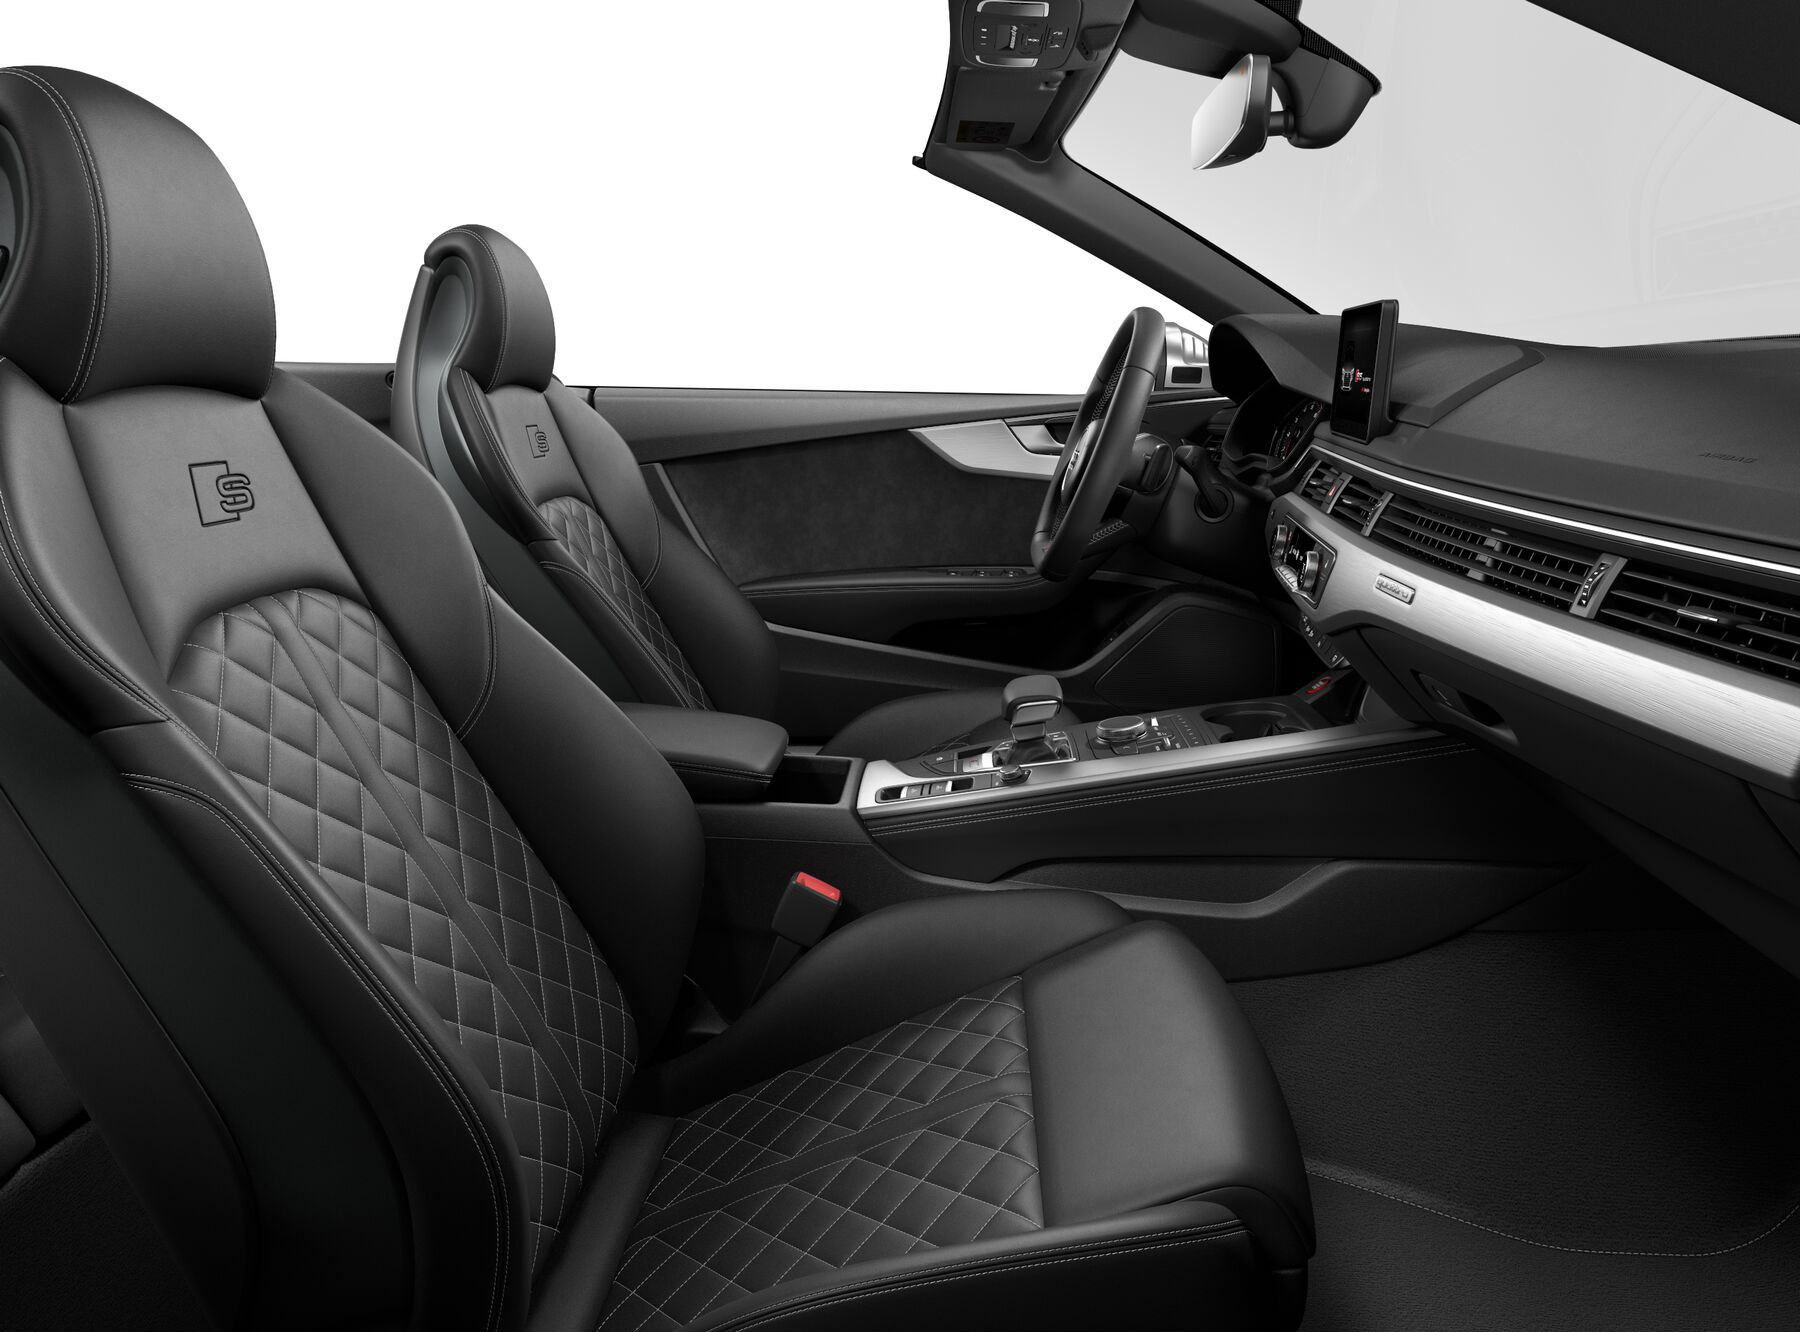 Audi S5 Cabriolet Premium Plus interior seat view